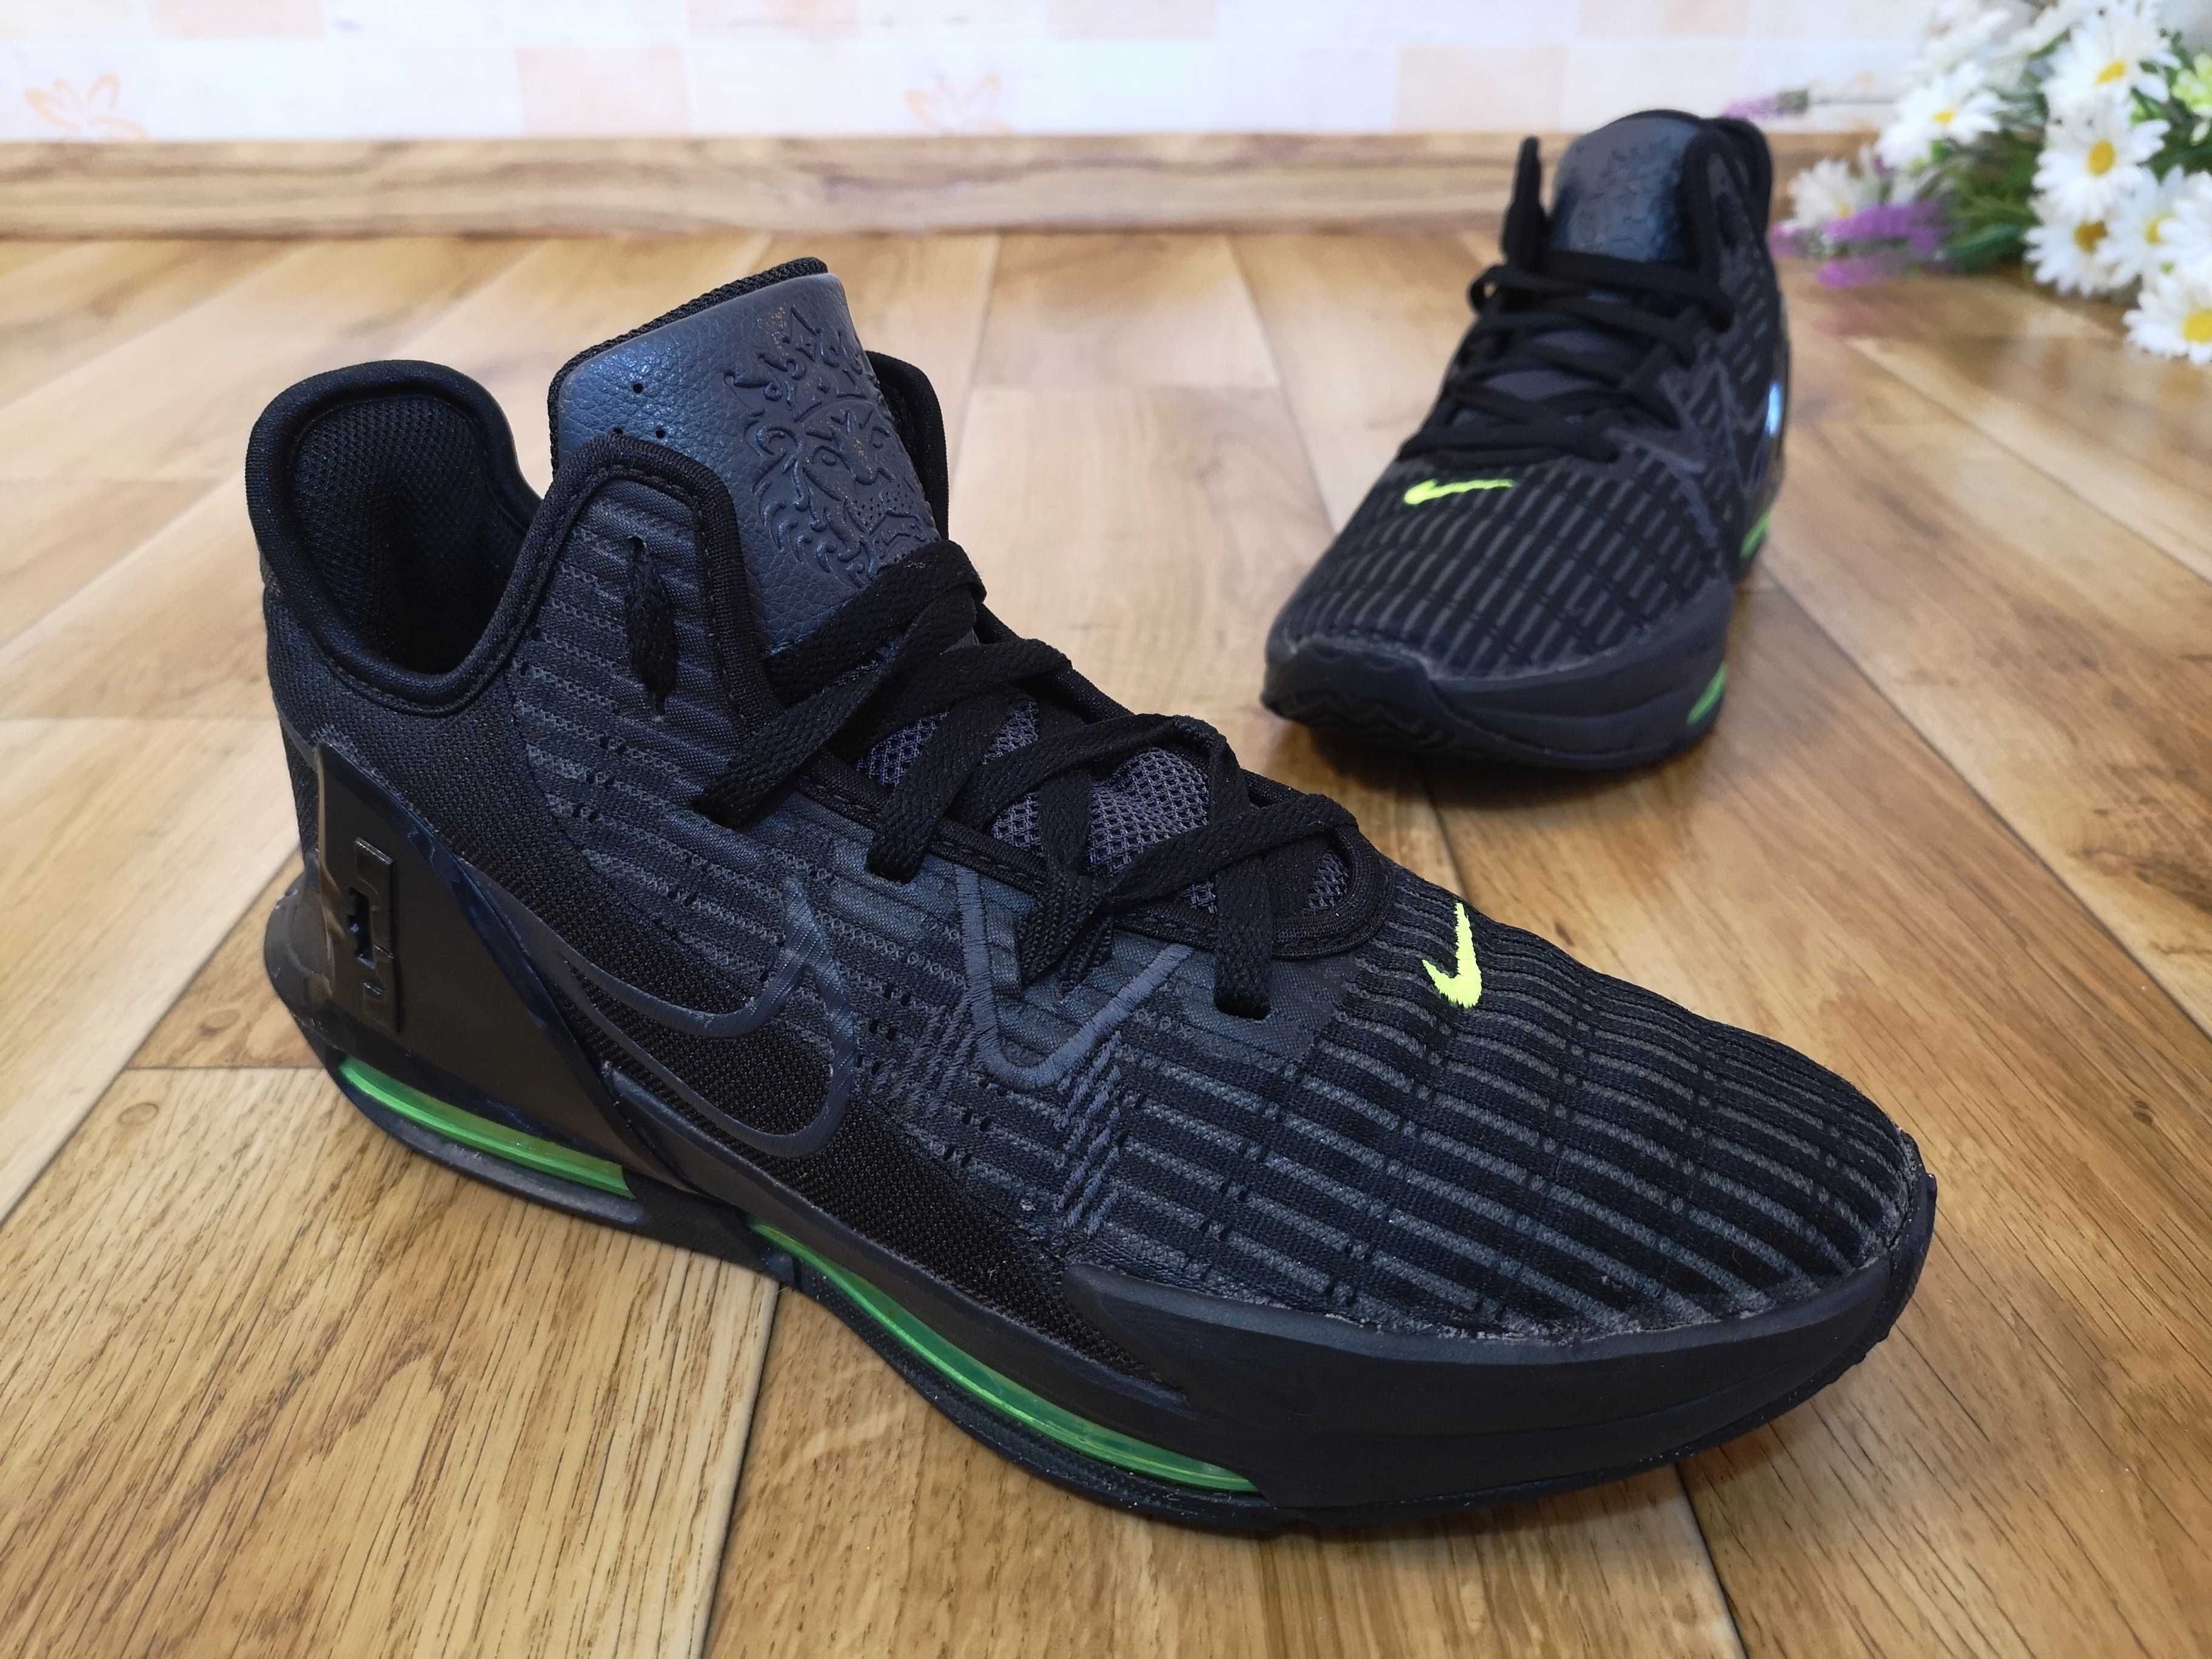 Nike Lebron męskie buty sportowe r.44